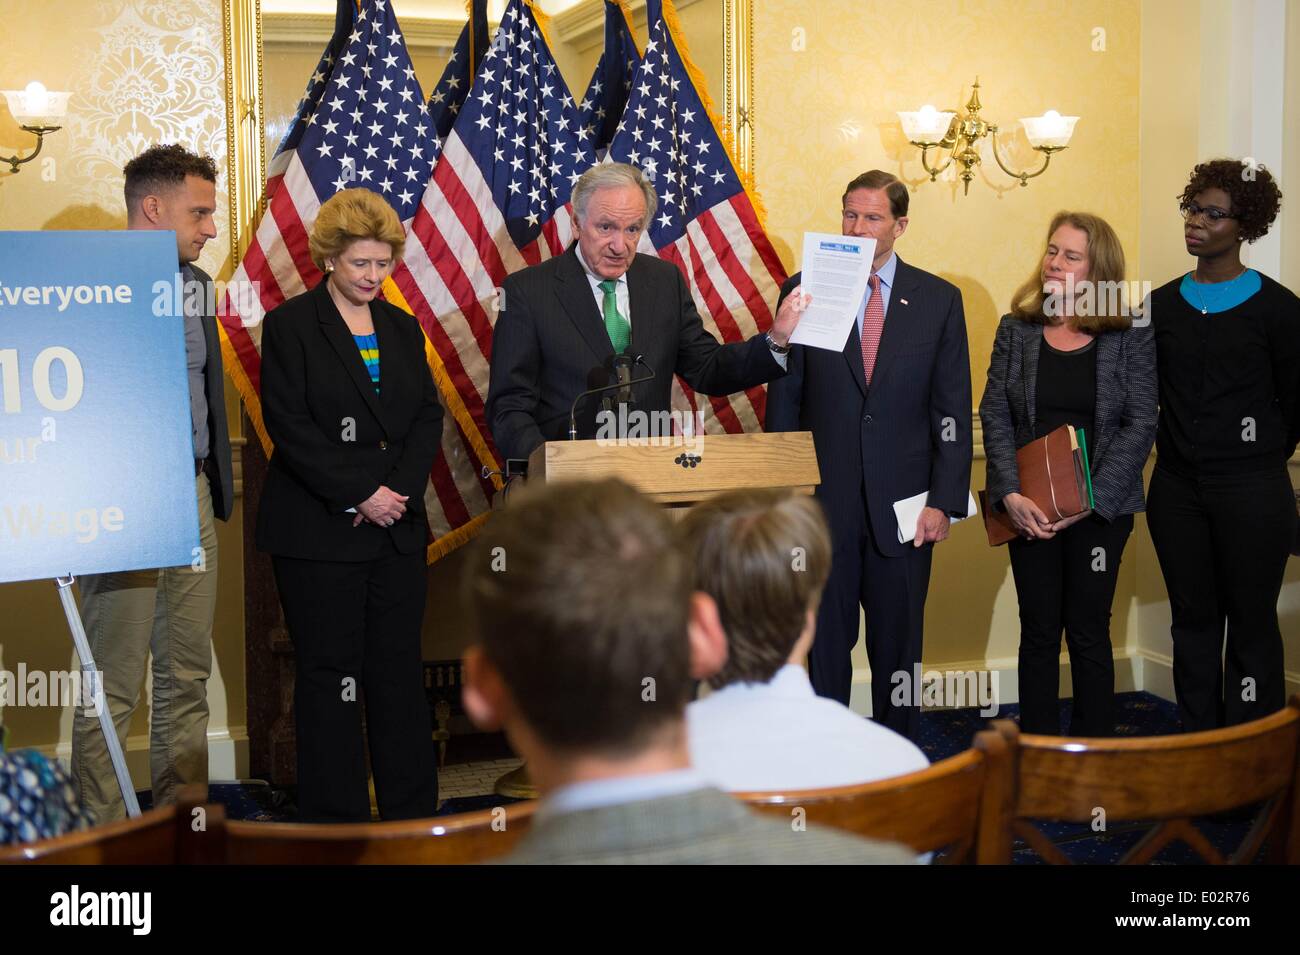 Iowa il senatore Tom Harkin stand con un gruppo dei democratici per il lancio di un push per passare pay equità tra uomini e donne e una proposta per aumentare il minimo federale di aumento salariale a $10.10 per ora il 29 aprile 2014 a Washington, DC. Foto Stock